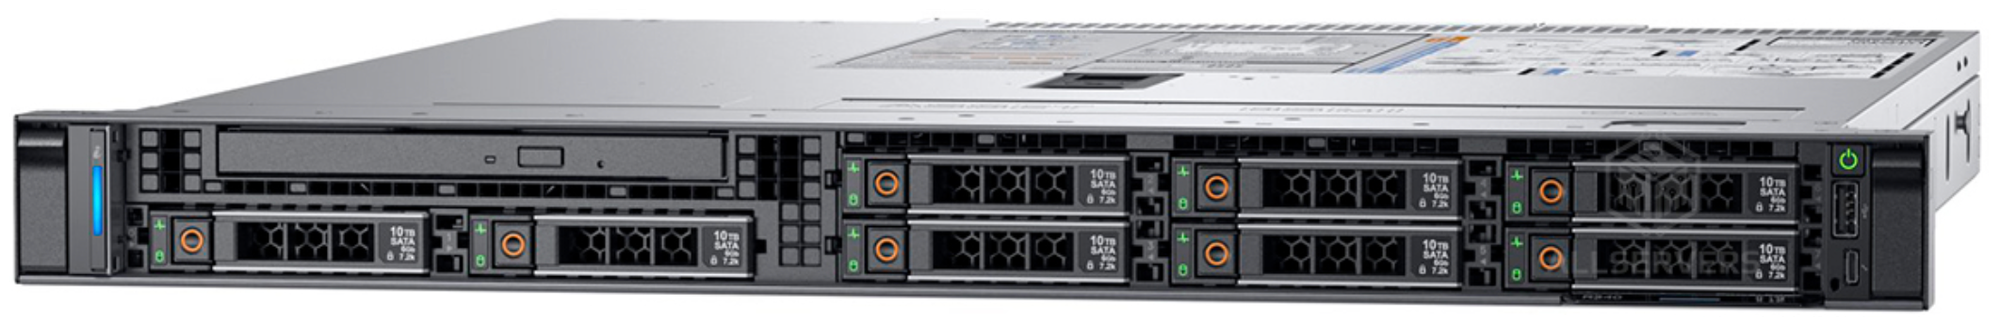 Сервер dell R640 8sff(2xGold 6138,128GB)